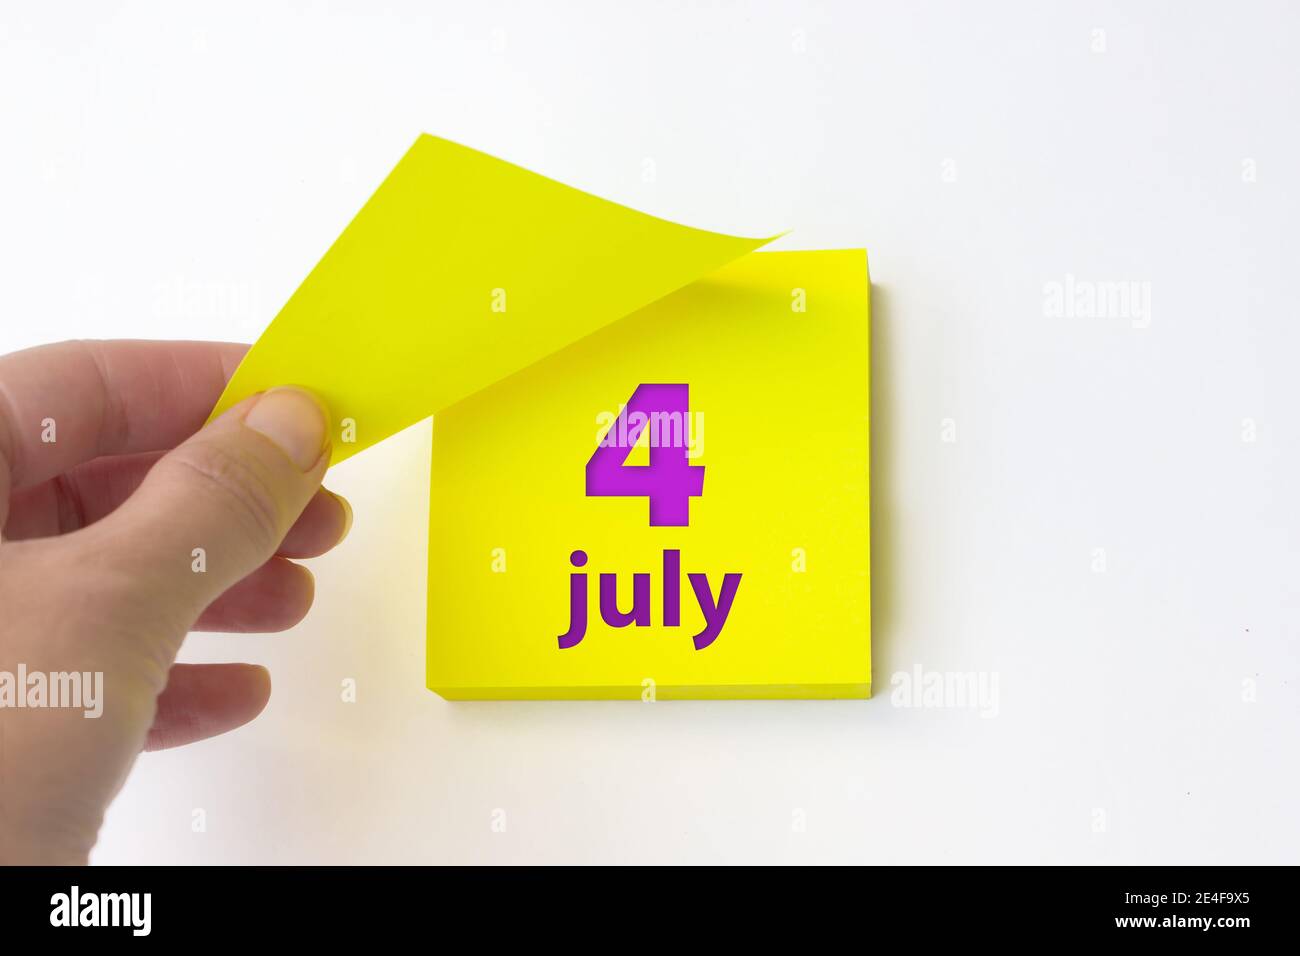 4 juillet. Jour 4 du mois, date du calendrier. La main se défait de la feuille jaune du calendrier. Concept mois d'été, jour de l'année Banque D'Images